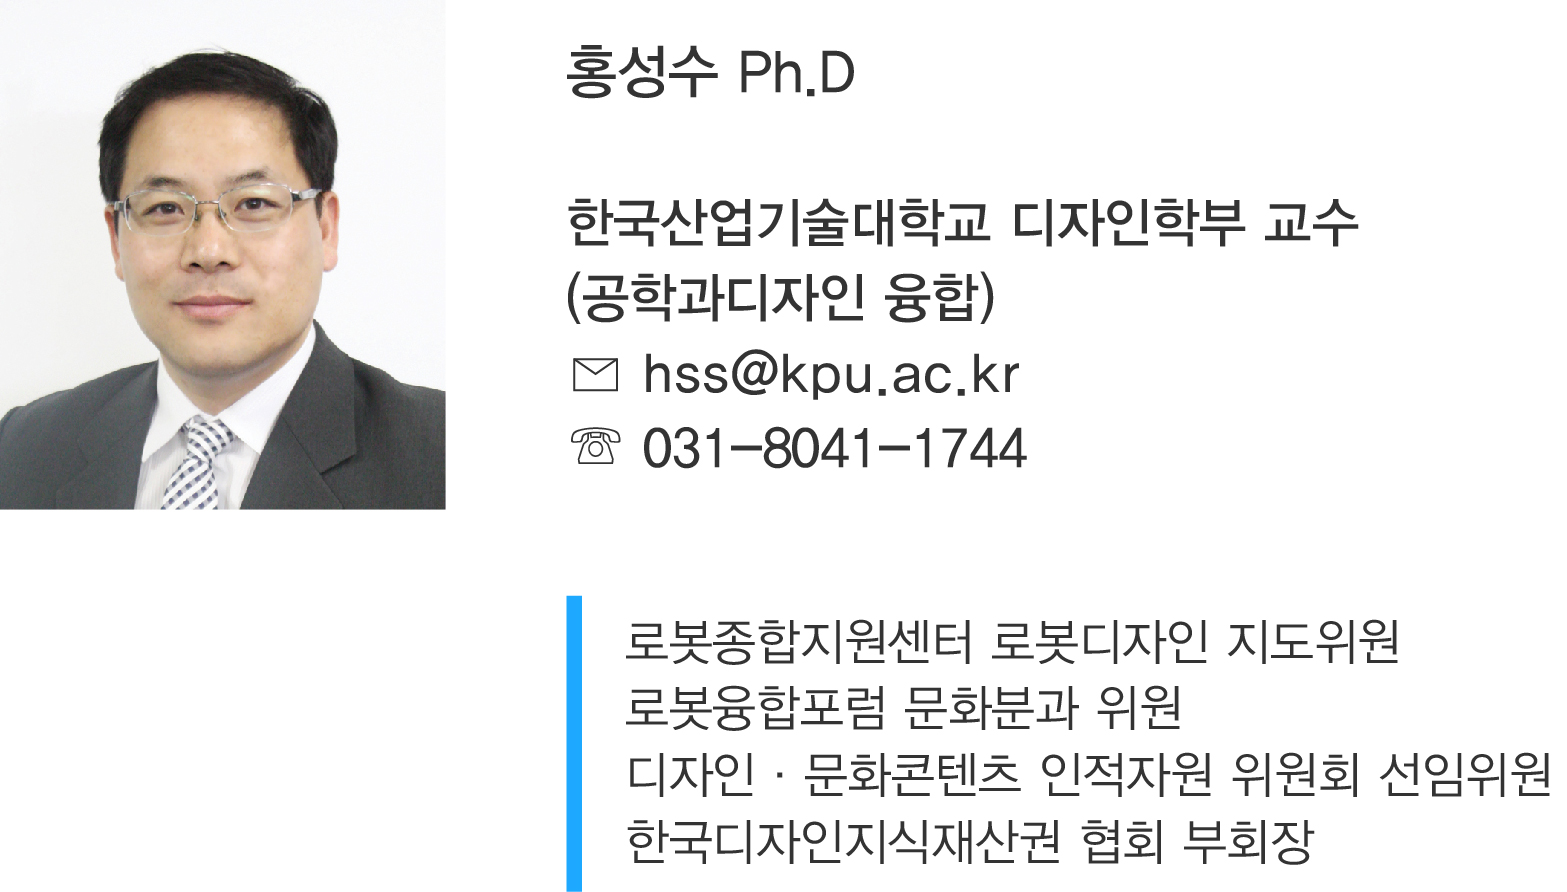 홍성수 Ph.D 한국산업기술대학교 디자인학부 교수 (공학과ㅣ자인 융합) hss@kpu.ac.kr 031-8041-1744